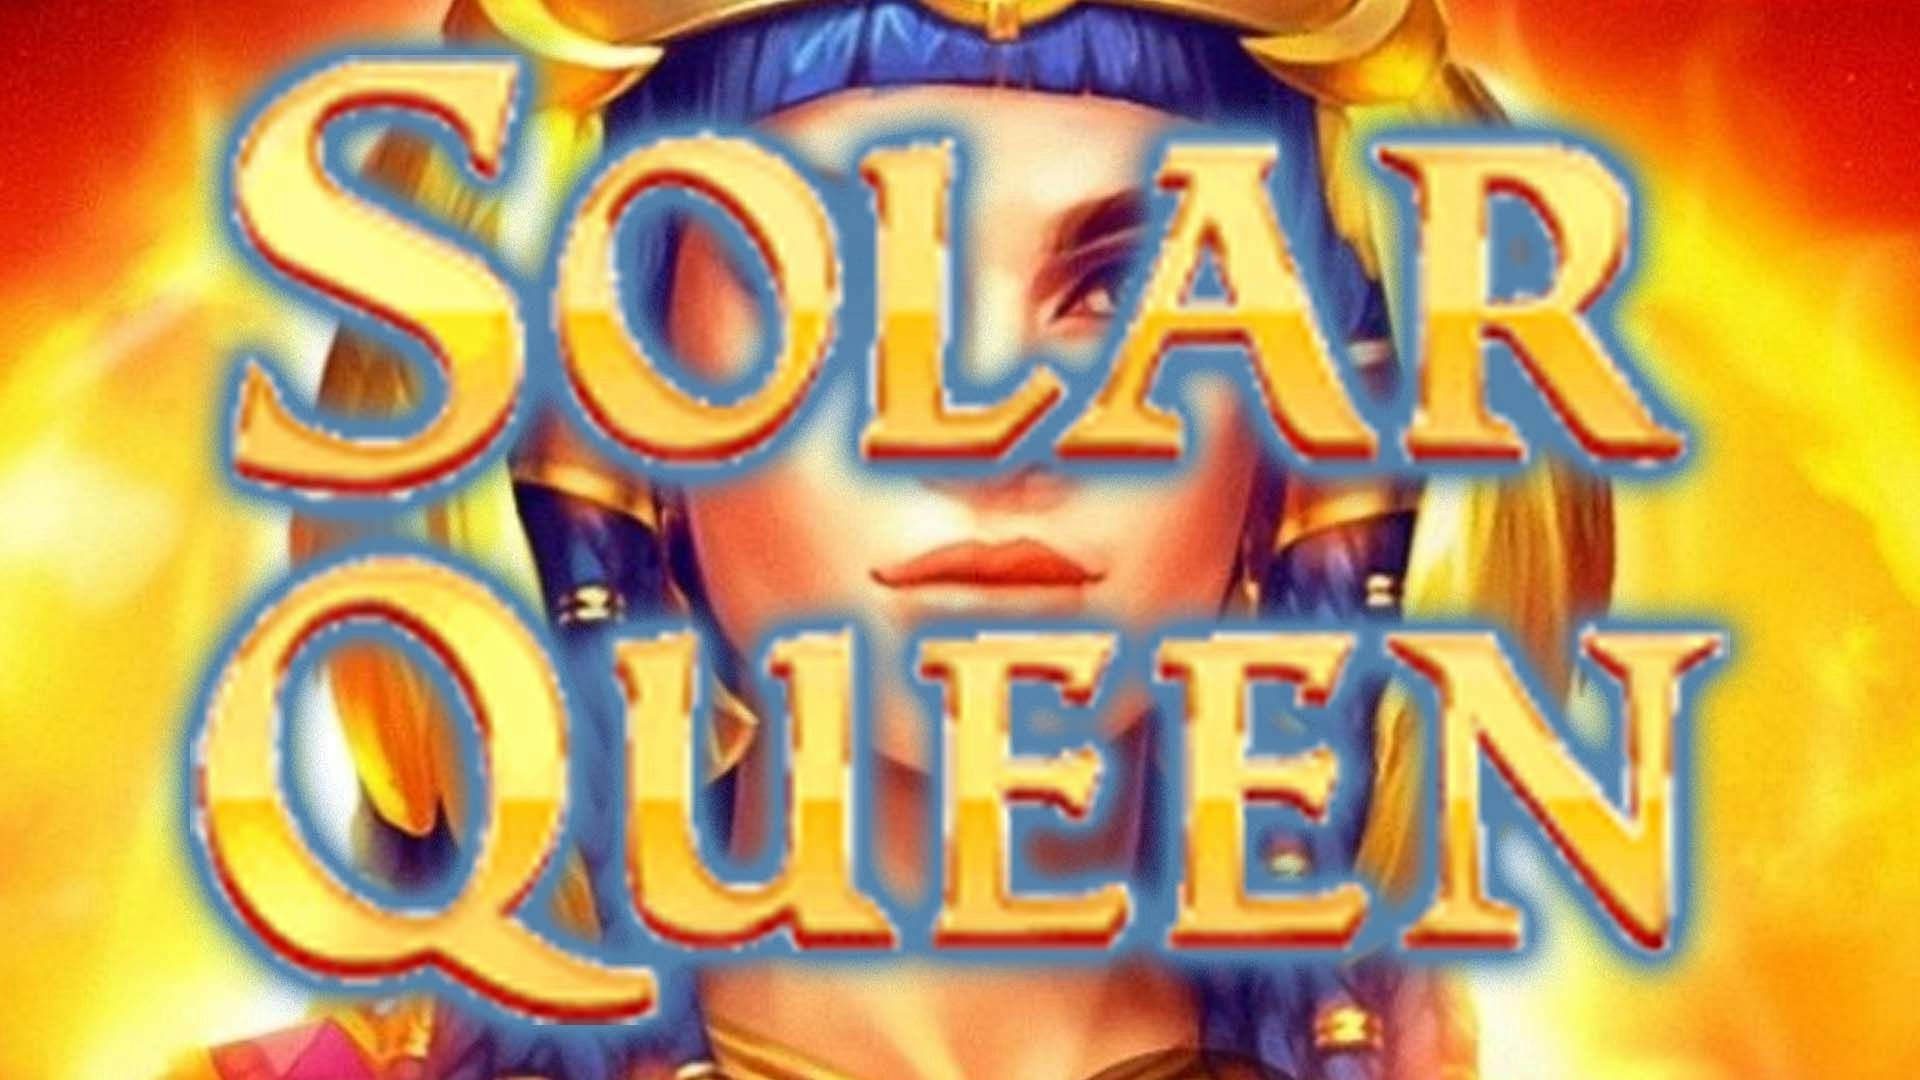 Solar Queen